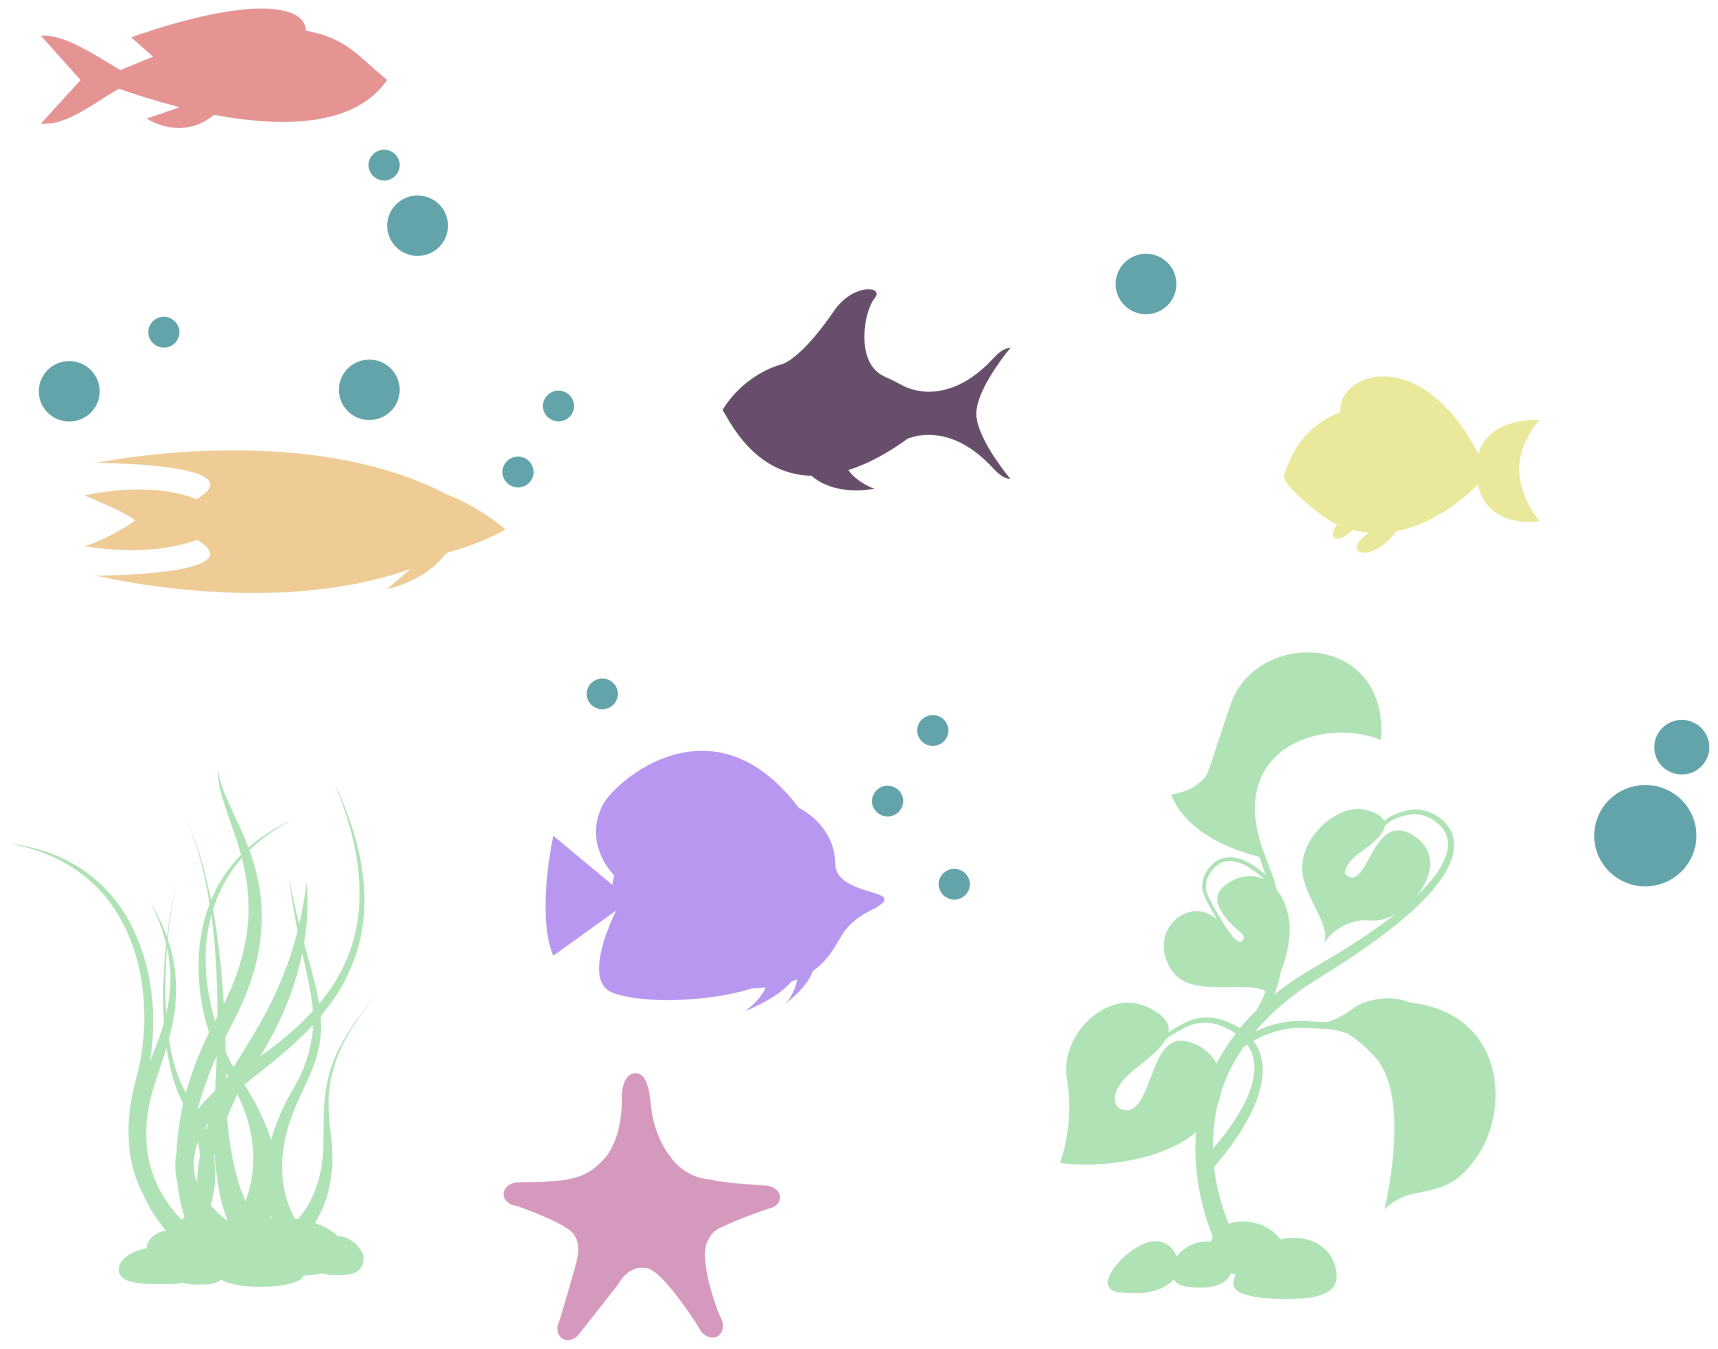 Vinilo animal dibujos de peces - TenVinilo